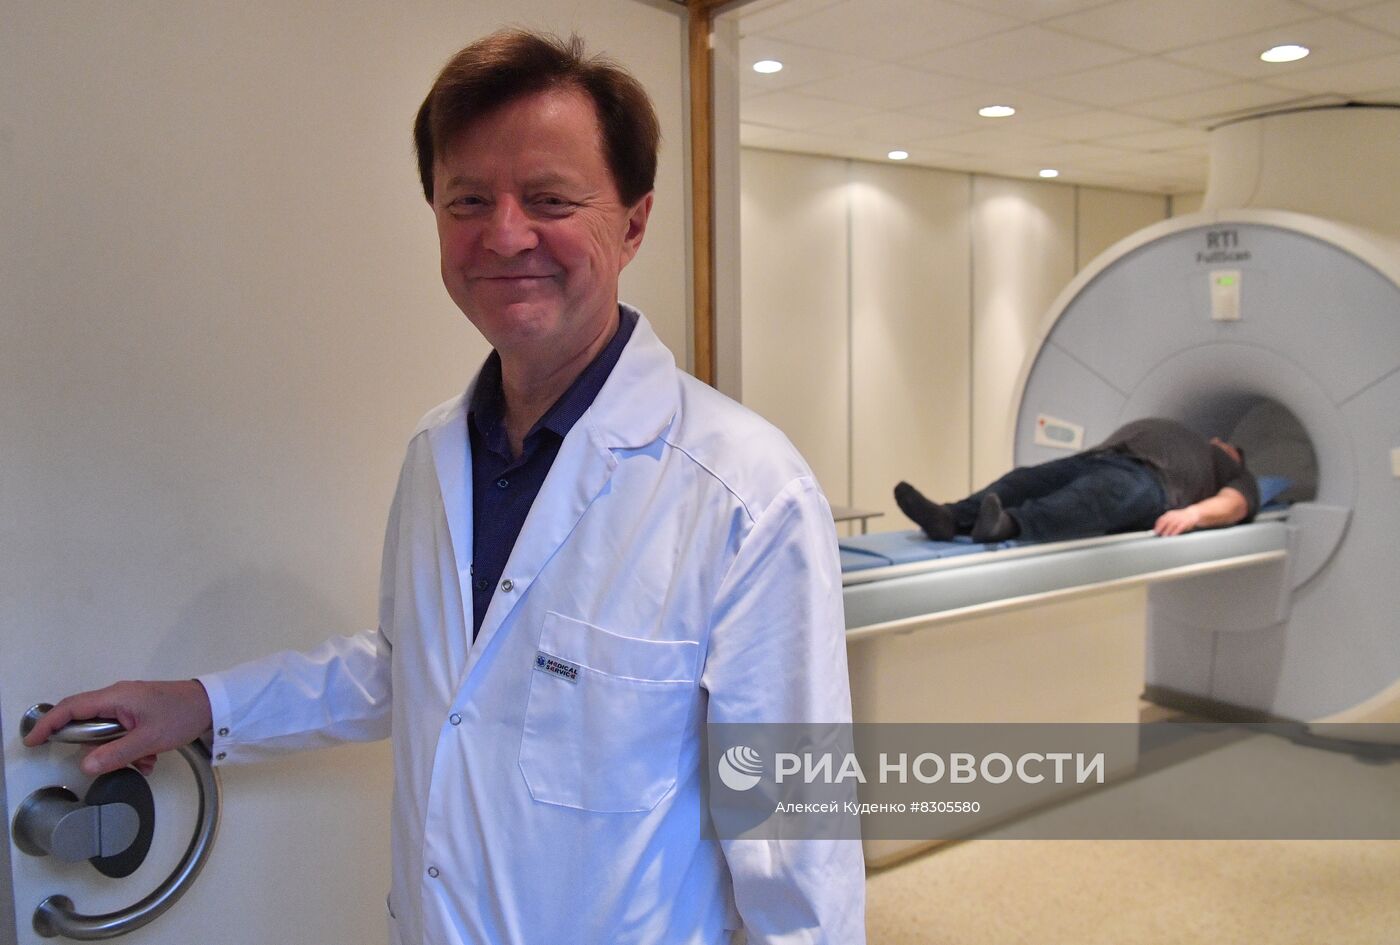 Прототип первого российского аппарата МРТ презентовали в Москве